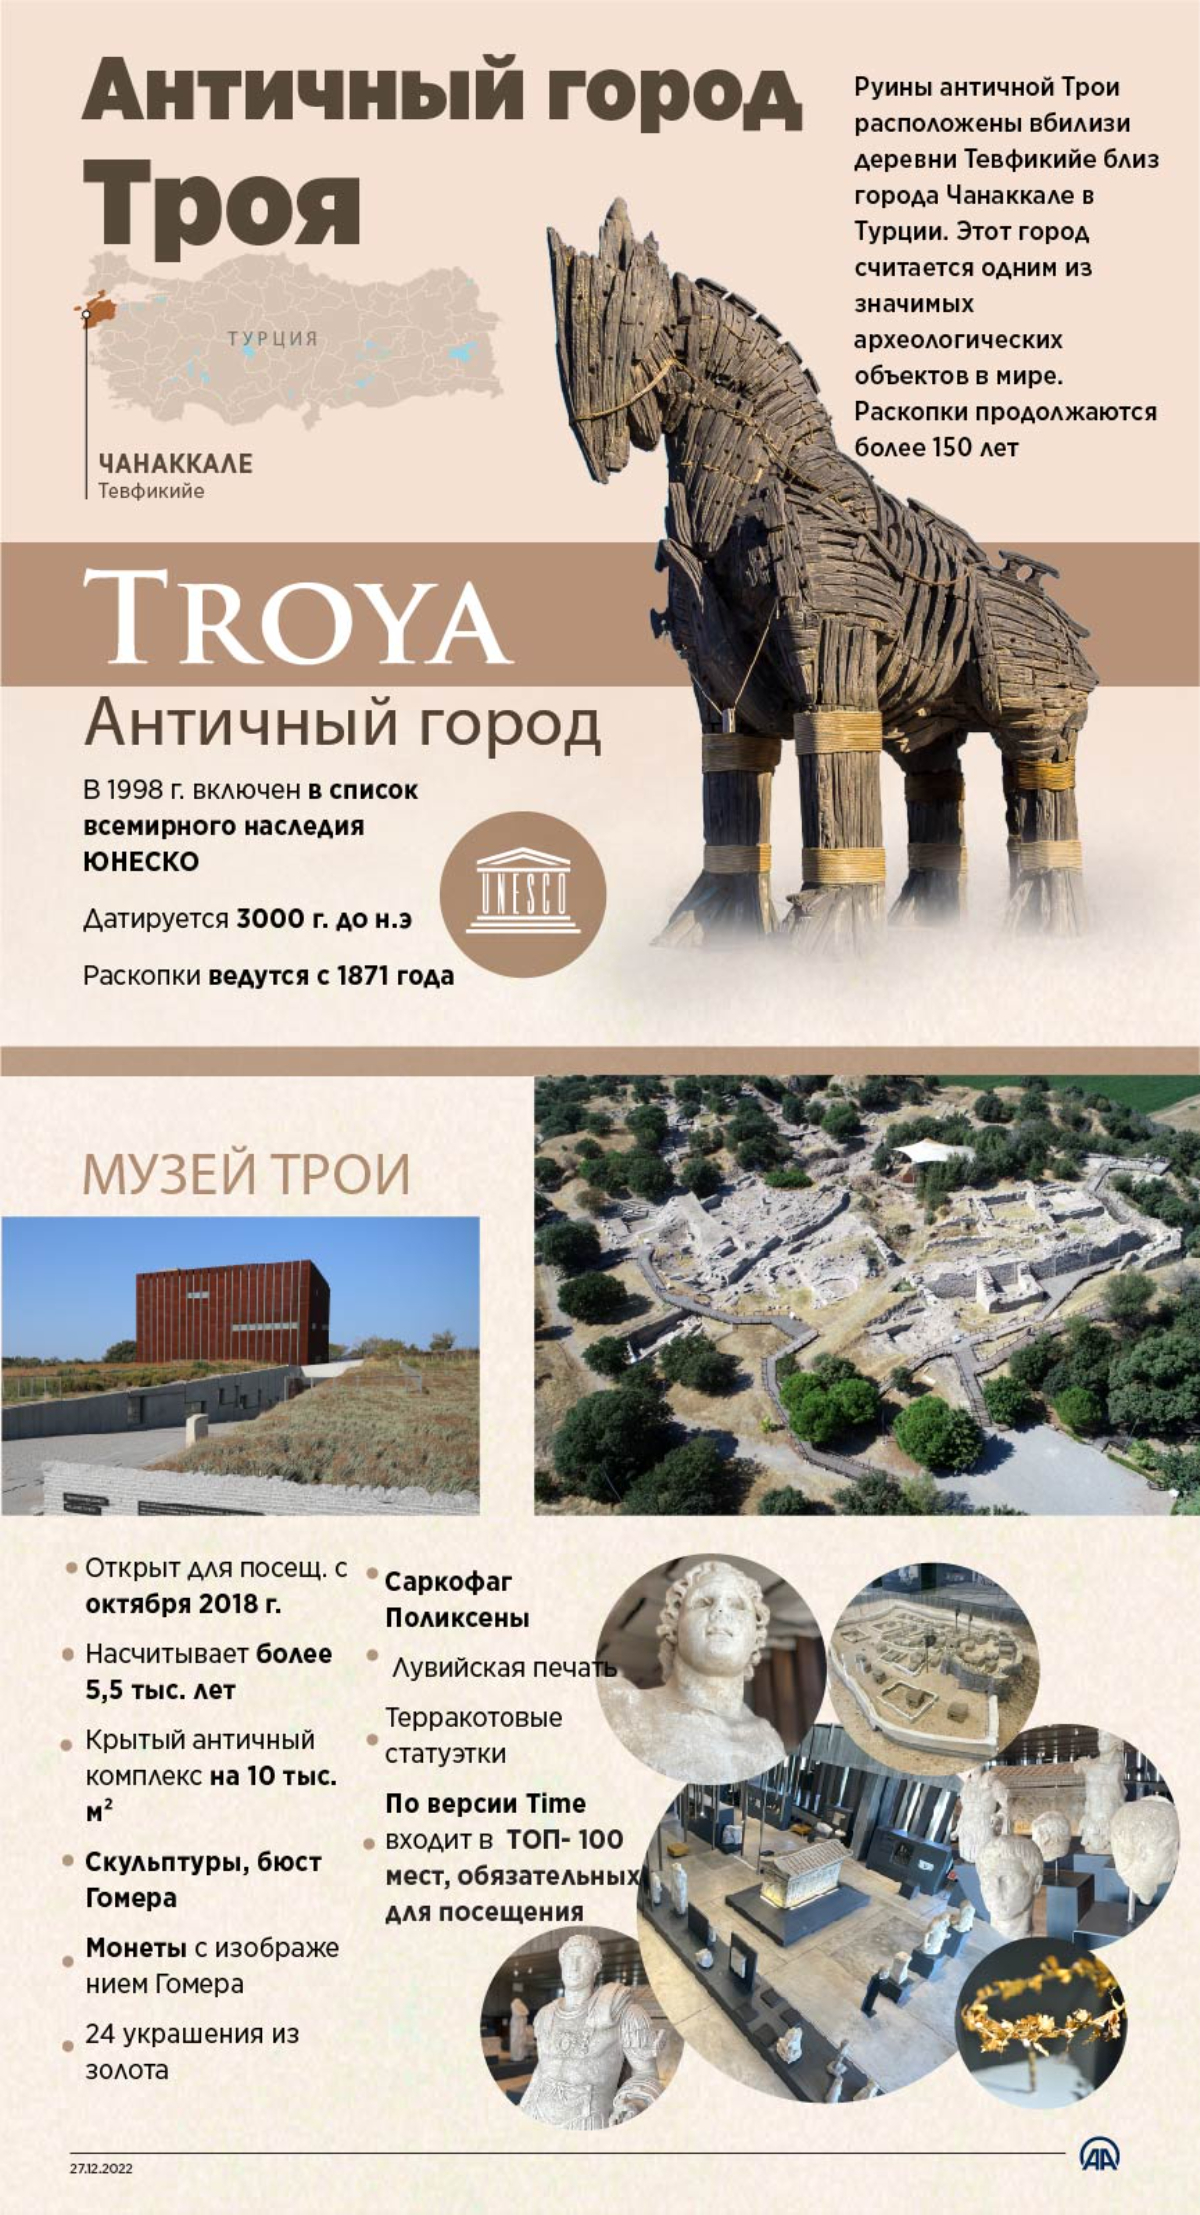 Наследие Турции: античный город Троя